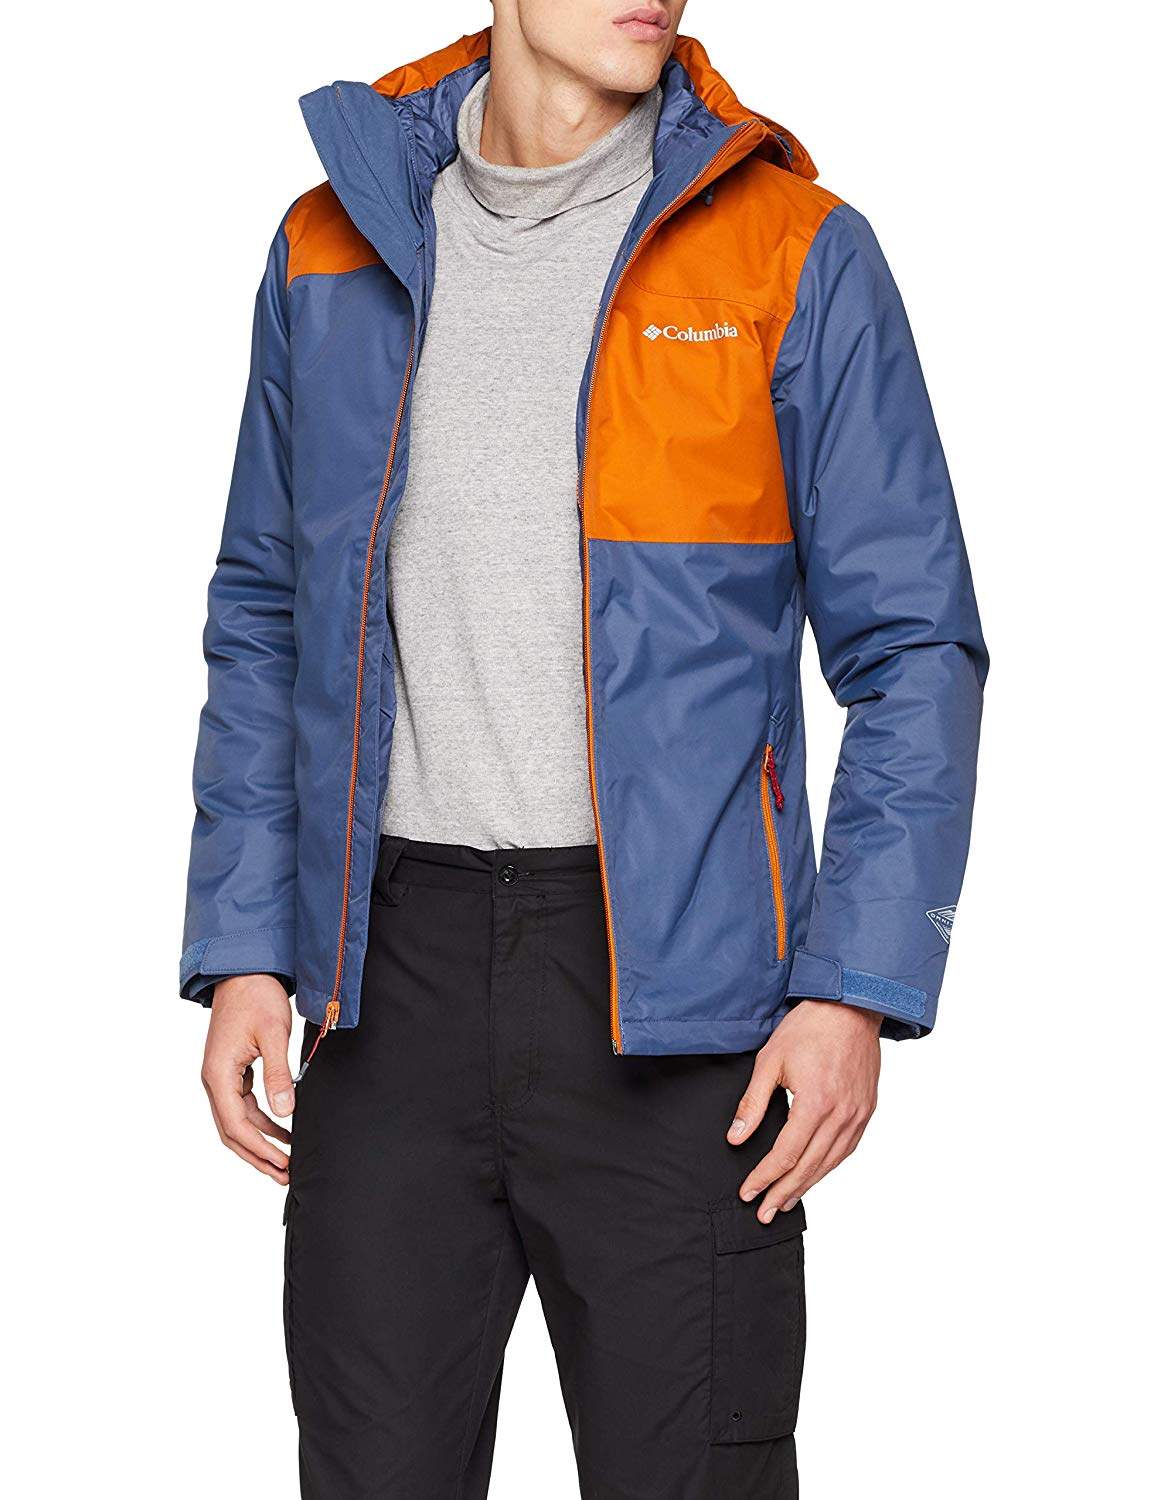 men's aravis explorer interchange jacket